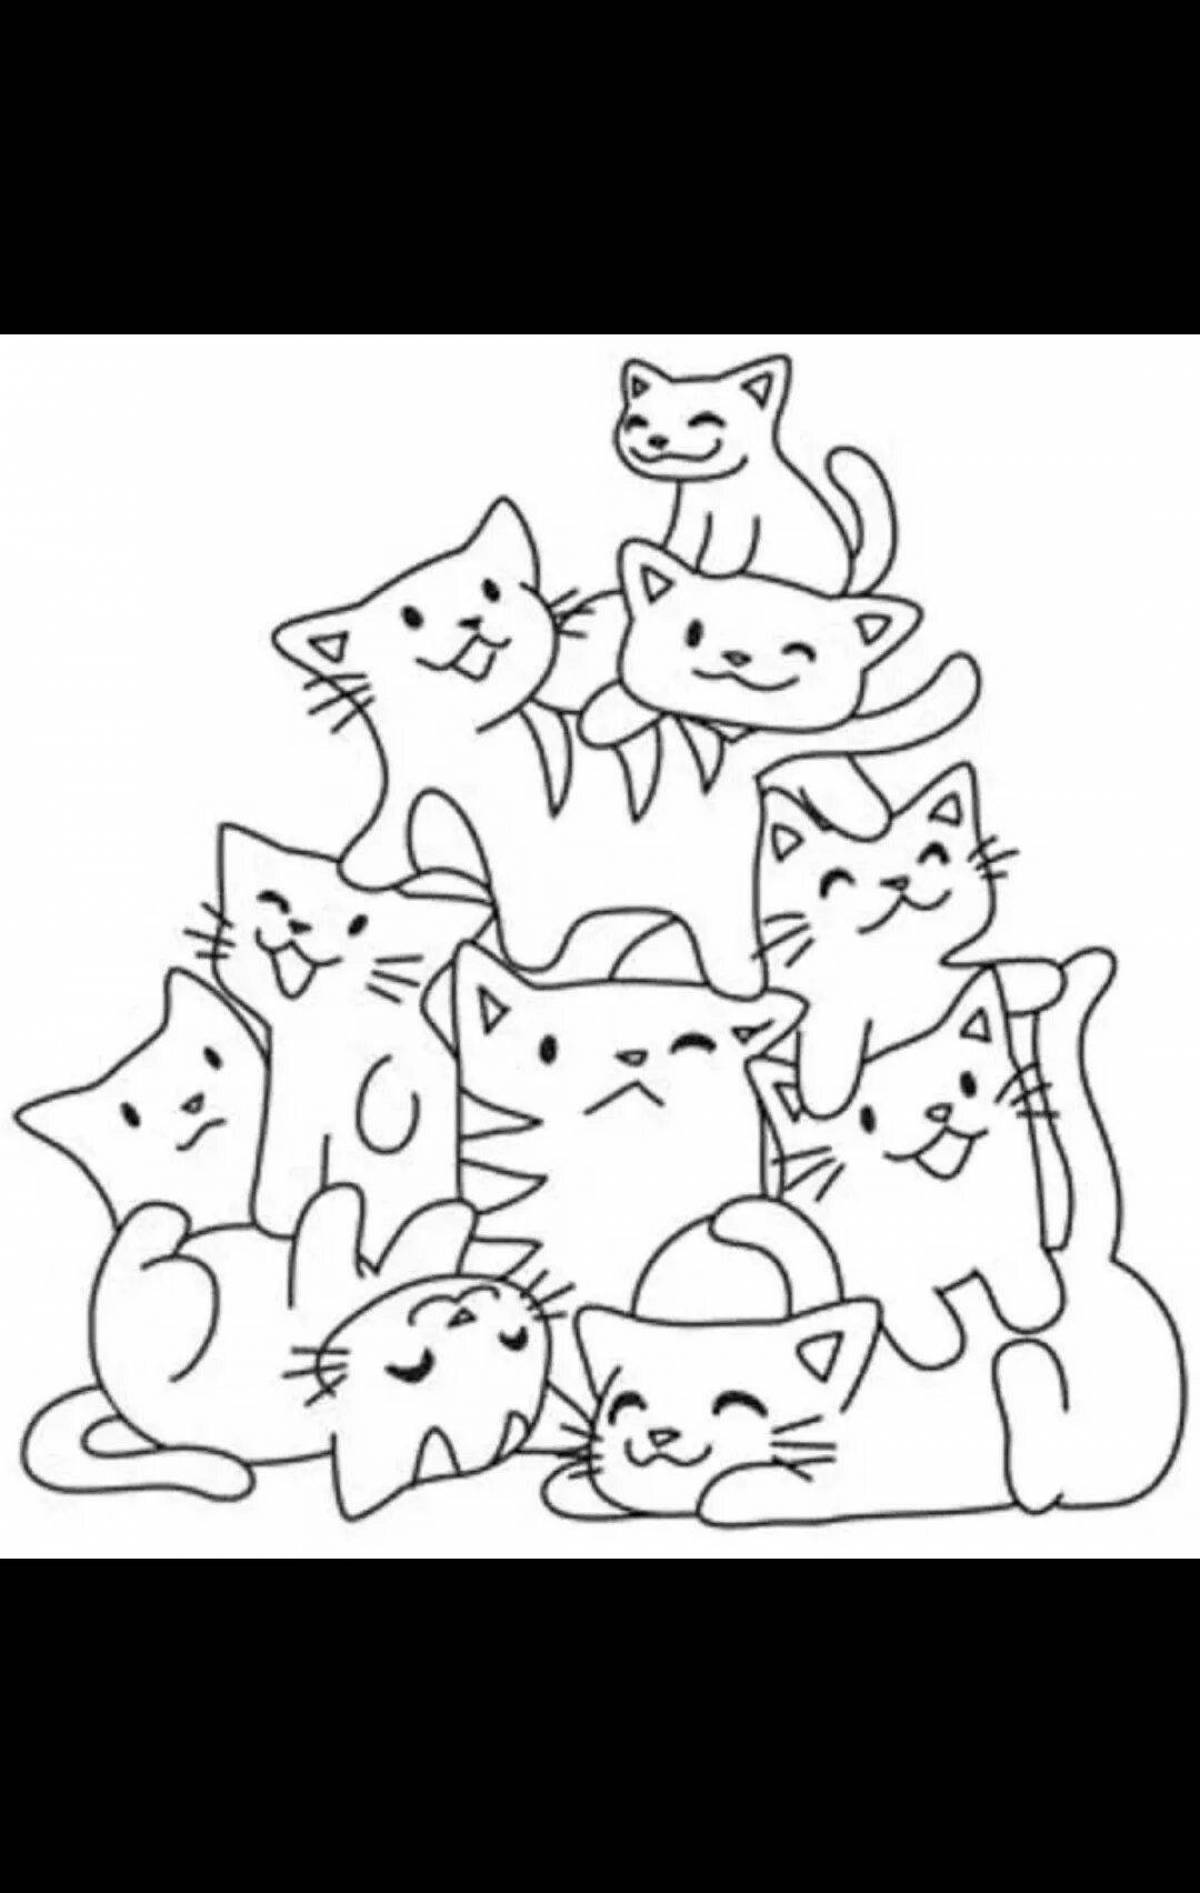 Анимация множества котов на одной странице